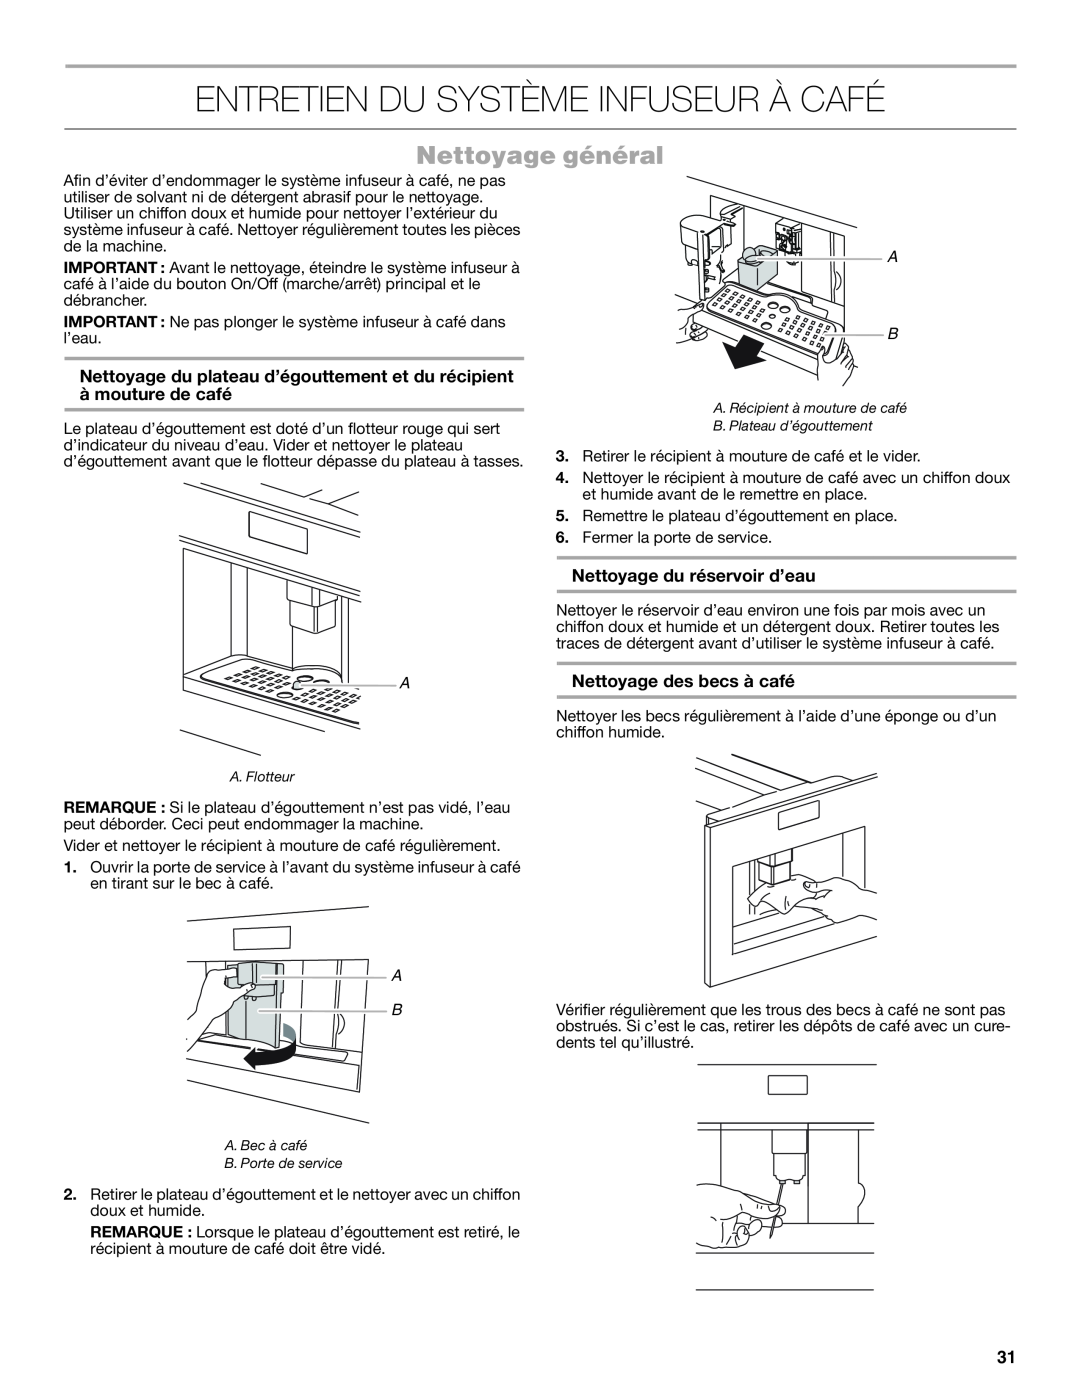 Jenn-Air JBC7624BS manual Entretien Du Système Infuseur À Café, Nettoyage général, Nettoyage du réservoir d’eau 